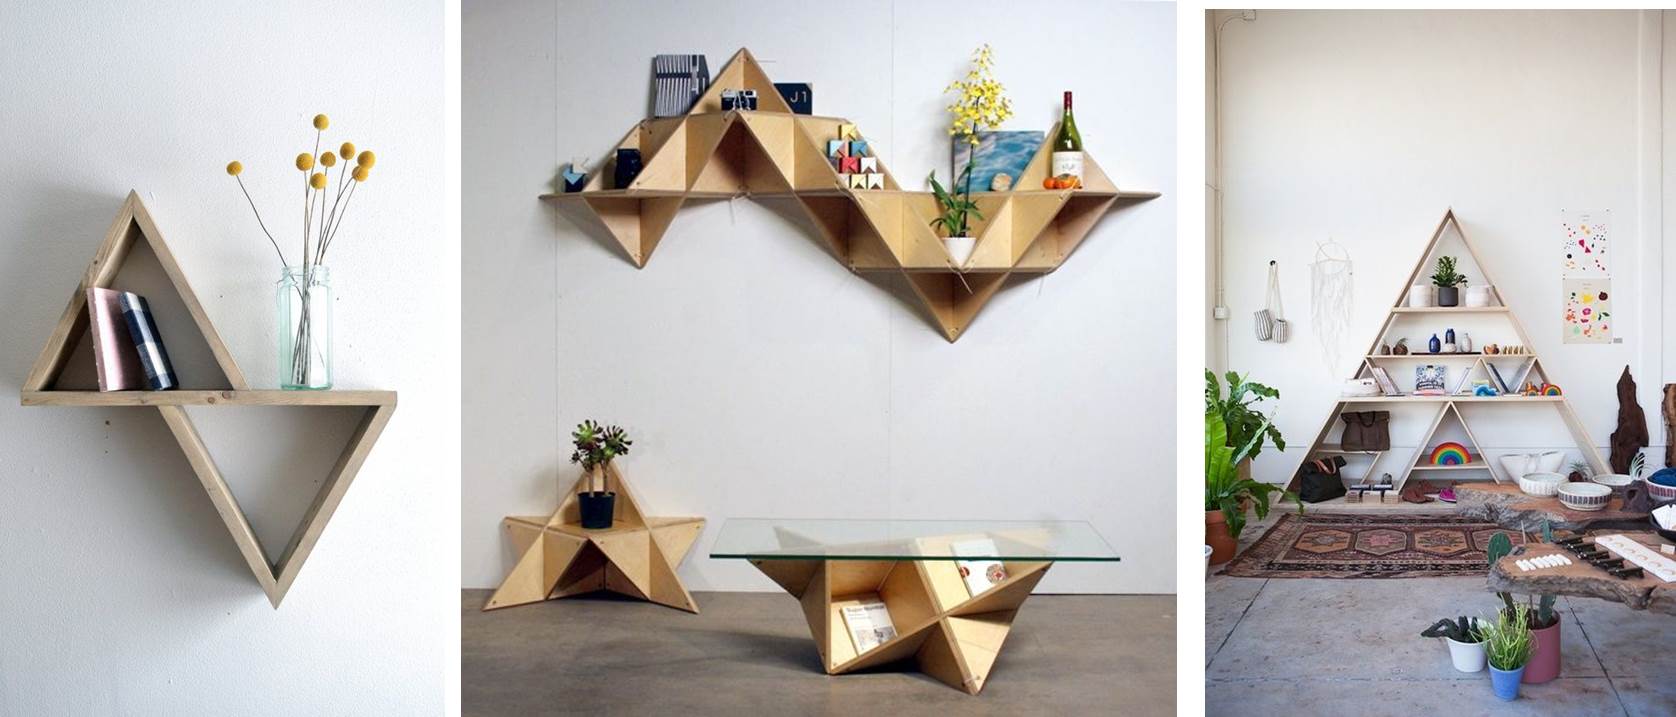 decoracion-geometrica-estanterias-forma-triangulos